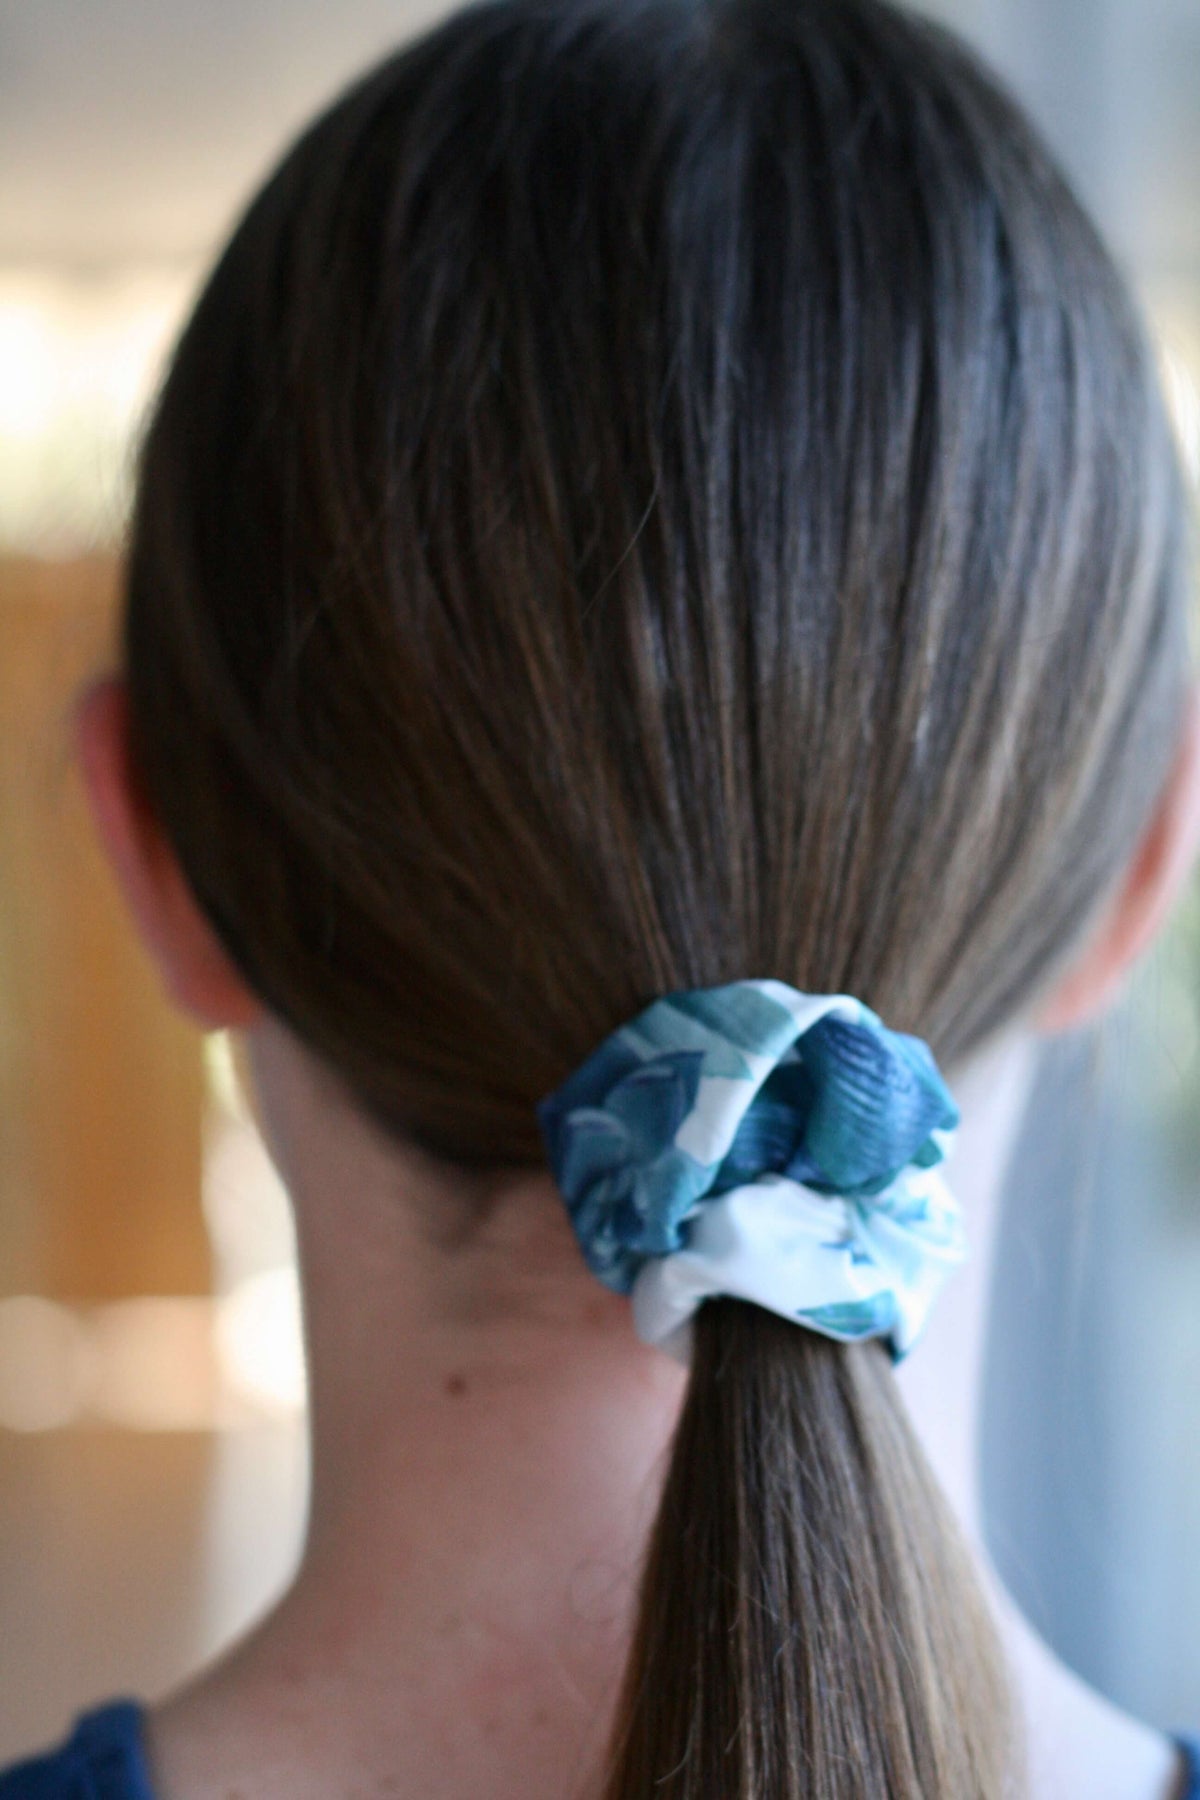 teen girls hair accessories scrunchie by Love Haidee Australia floral print in girls hair